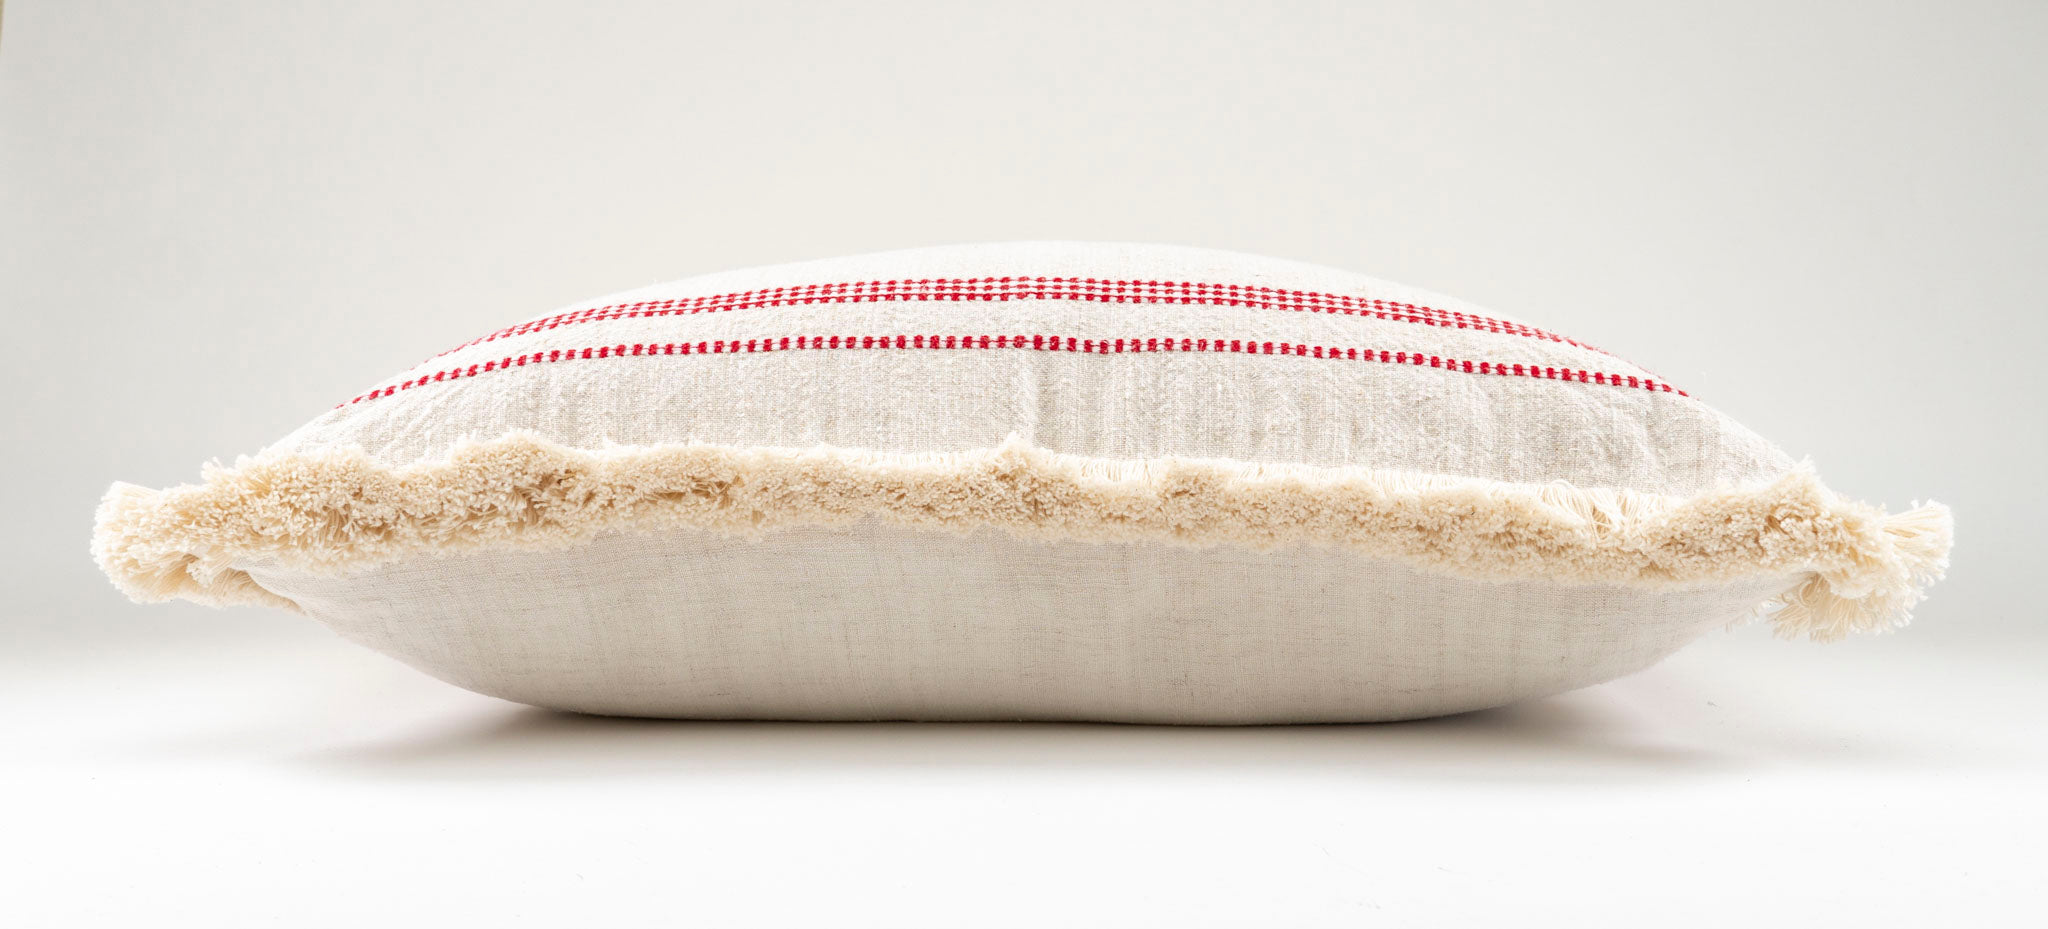 Pillow: Handwoven antique Hungarian hemp - P004